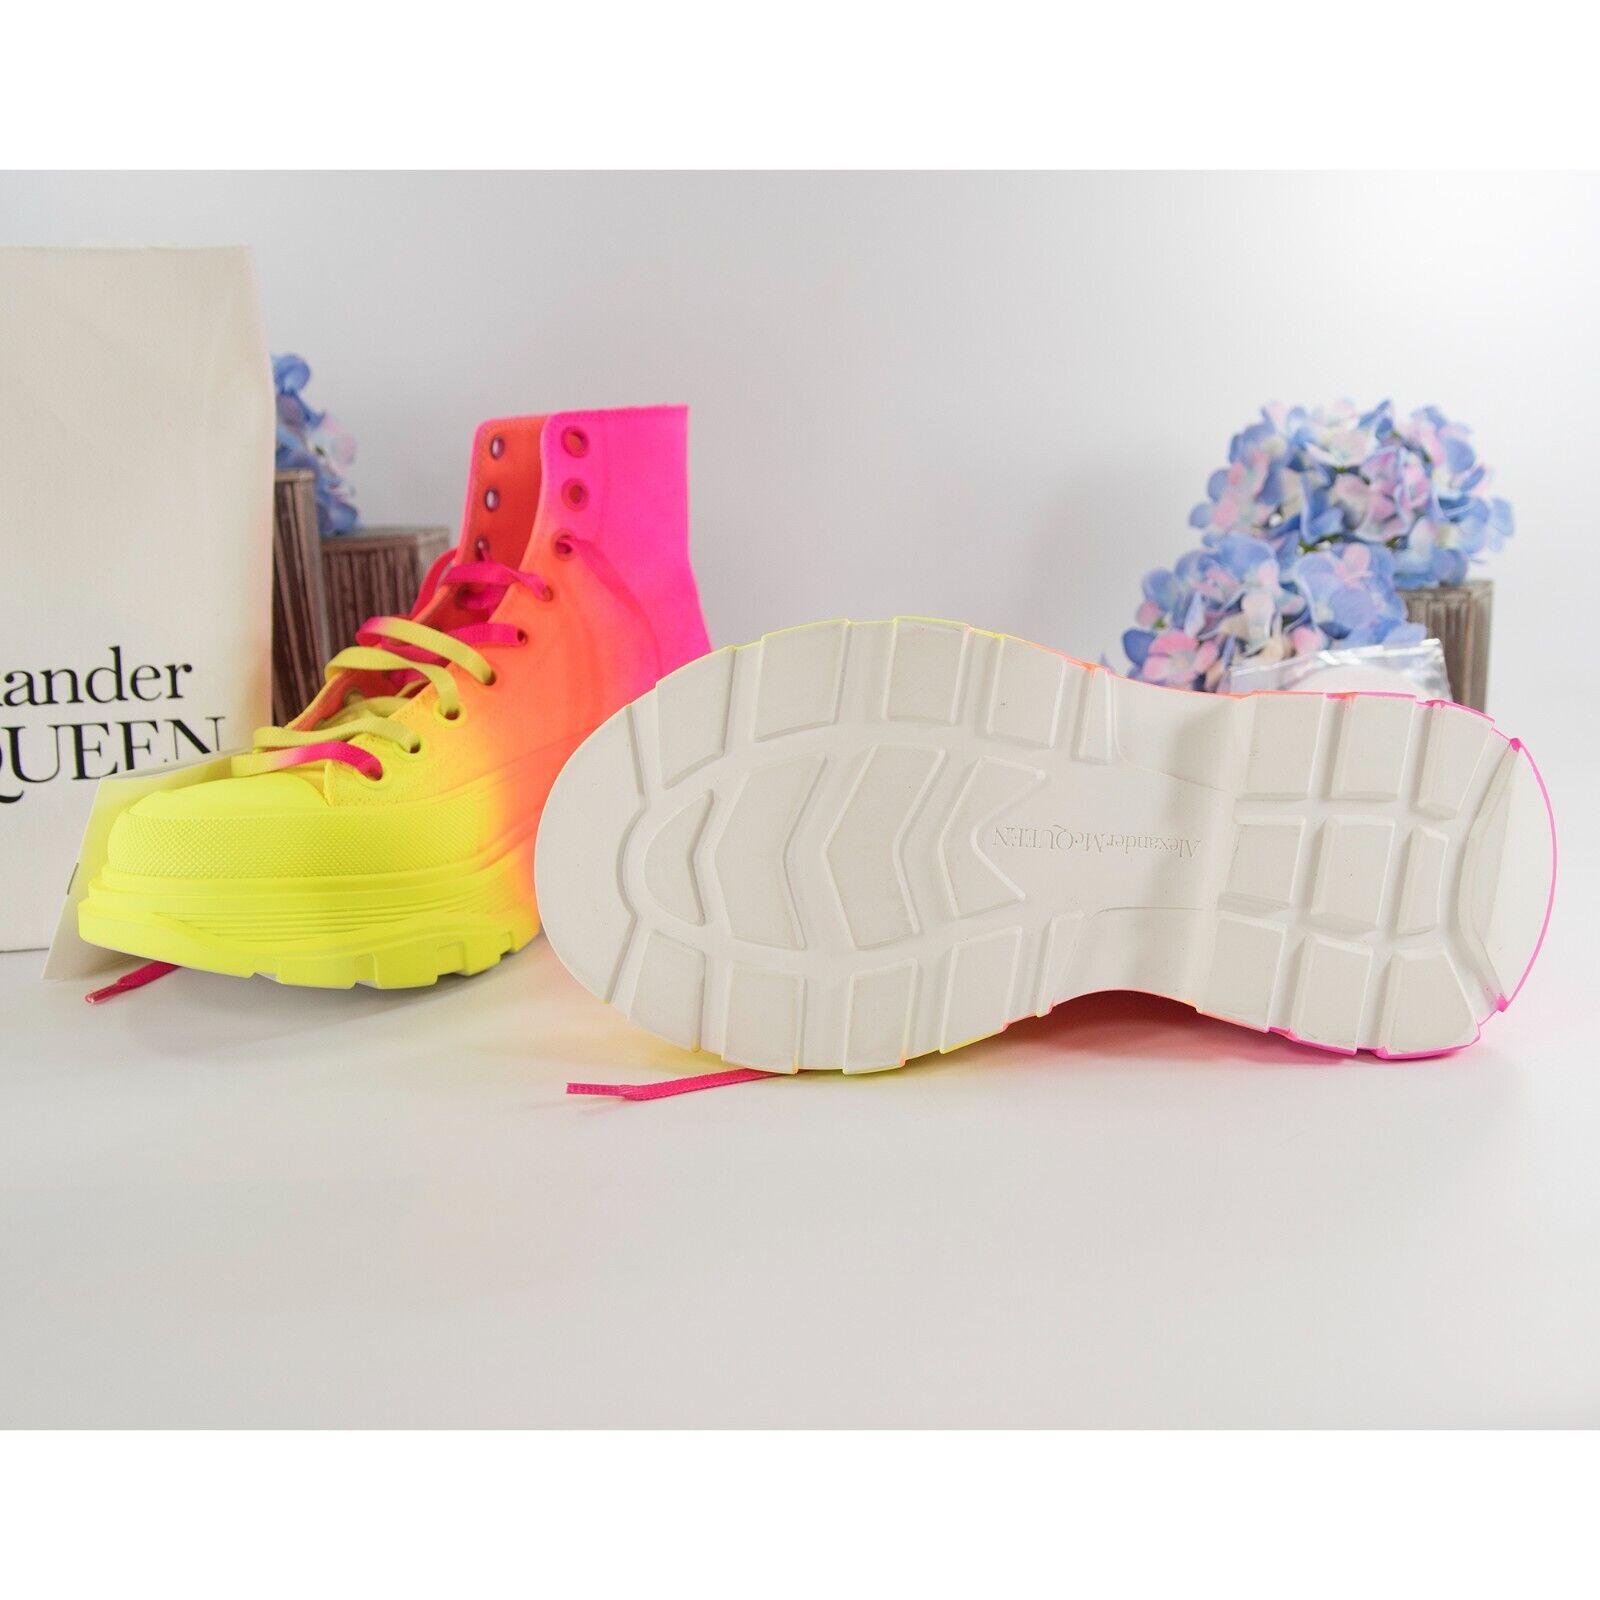 NEW Alexander McQueen Ombré Treadslick High-Top Sneakers Neon size 37 $790  MSRP | eBay